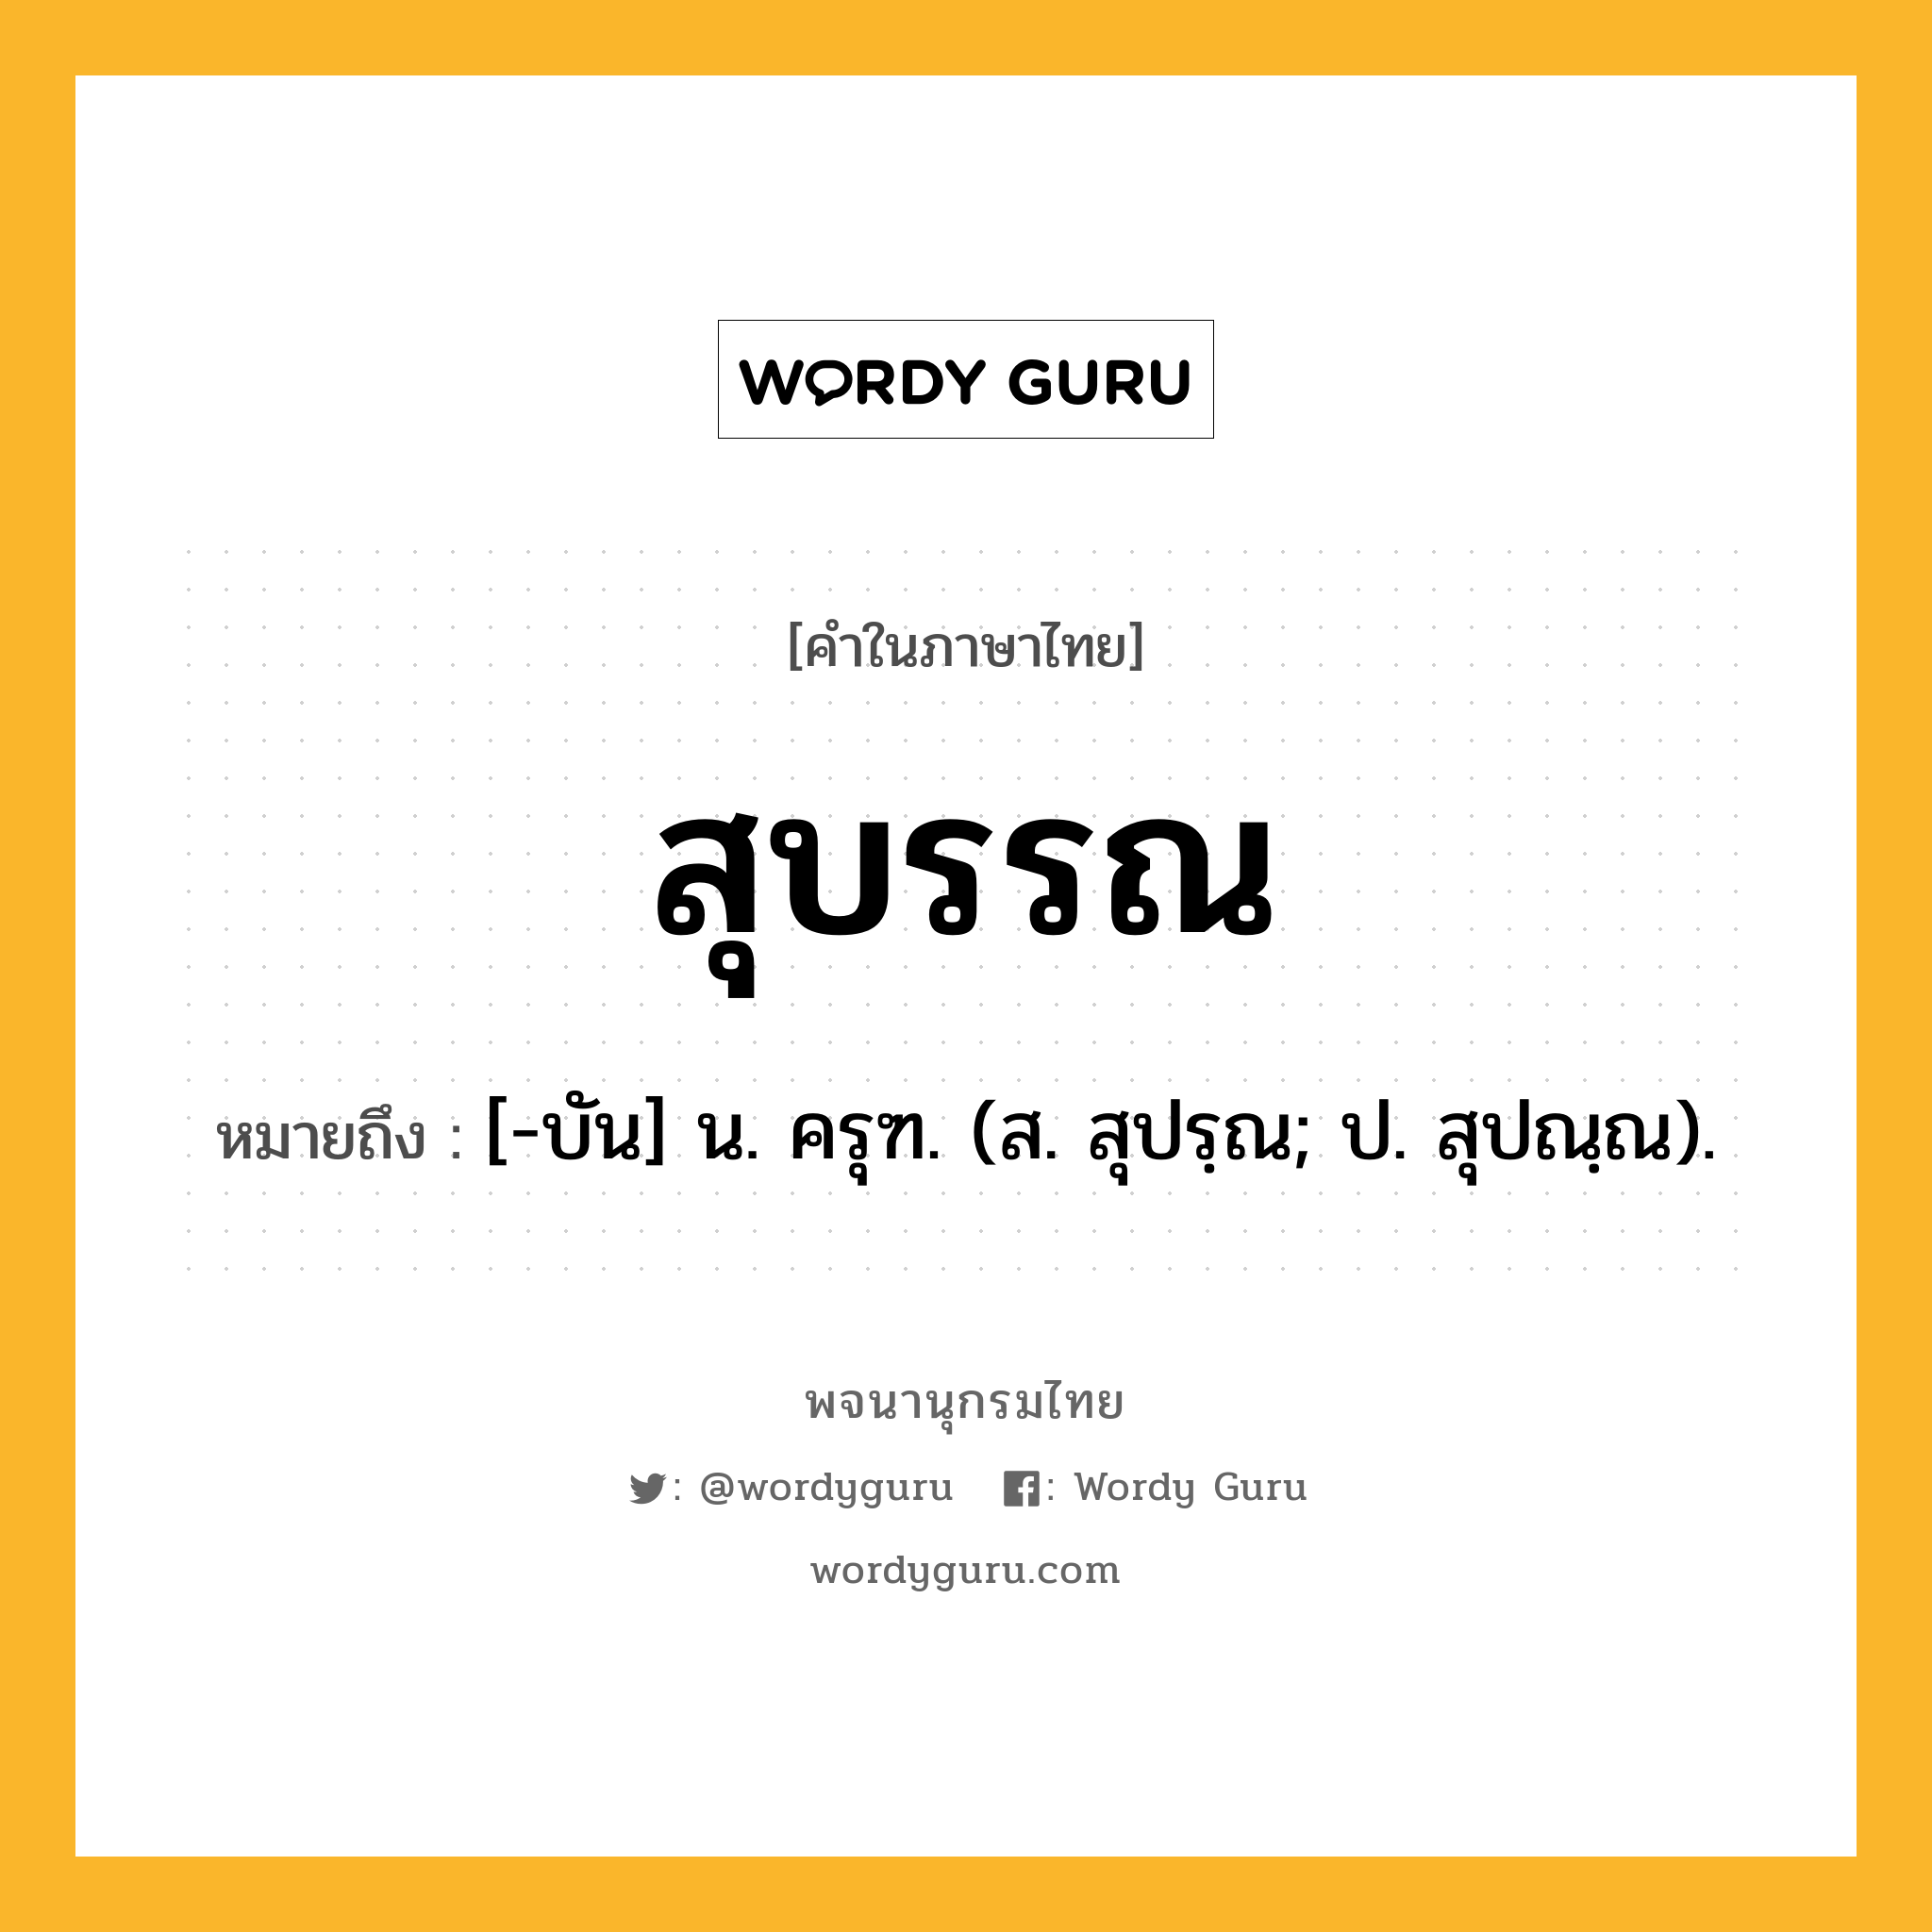 สุบรรณ ความหมาย หมายถึงอะไร?, คำในภาษาไทย สุบรรณ หมายถึง [-บัน] น. ครุฑ. (ส. สุปรฺณ; ป. สุปณฺณ).